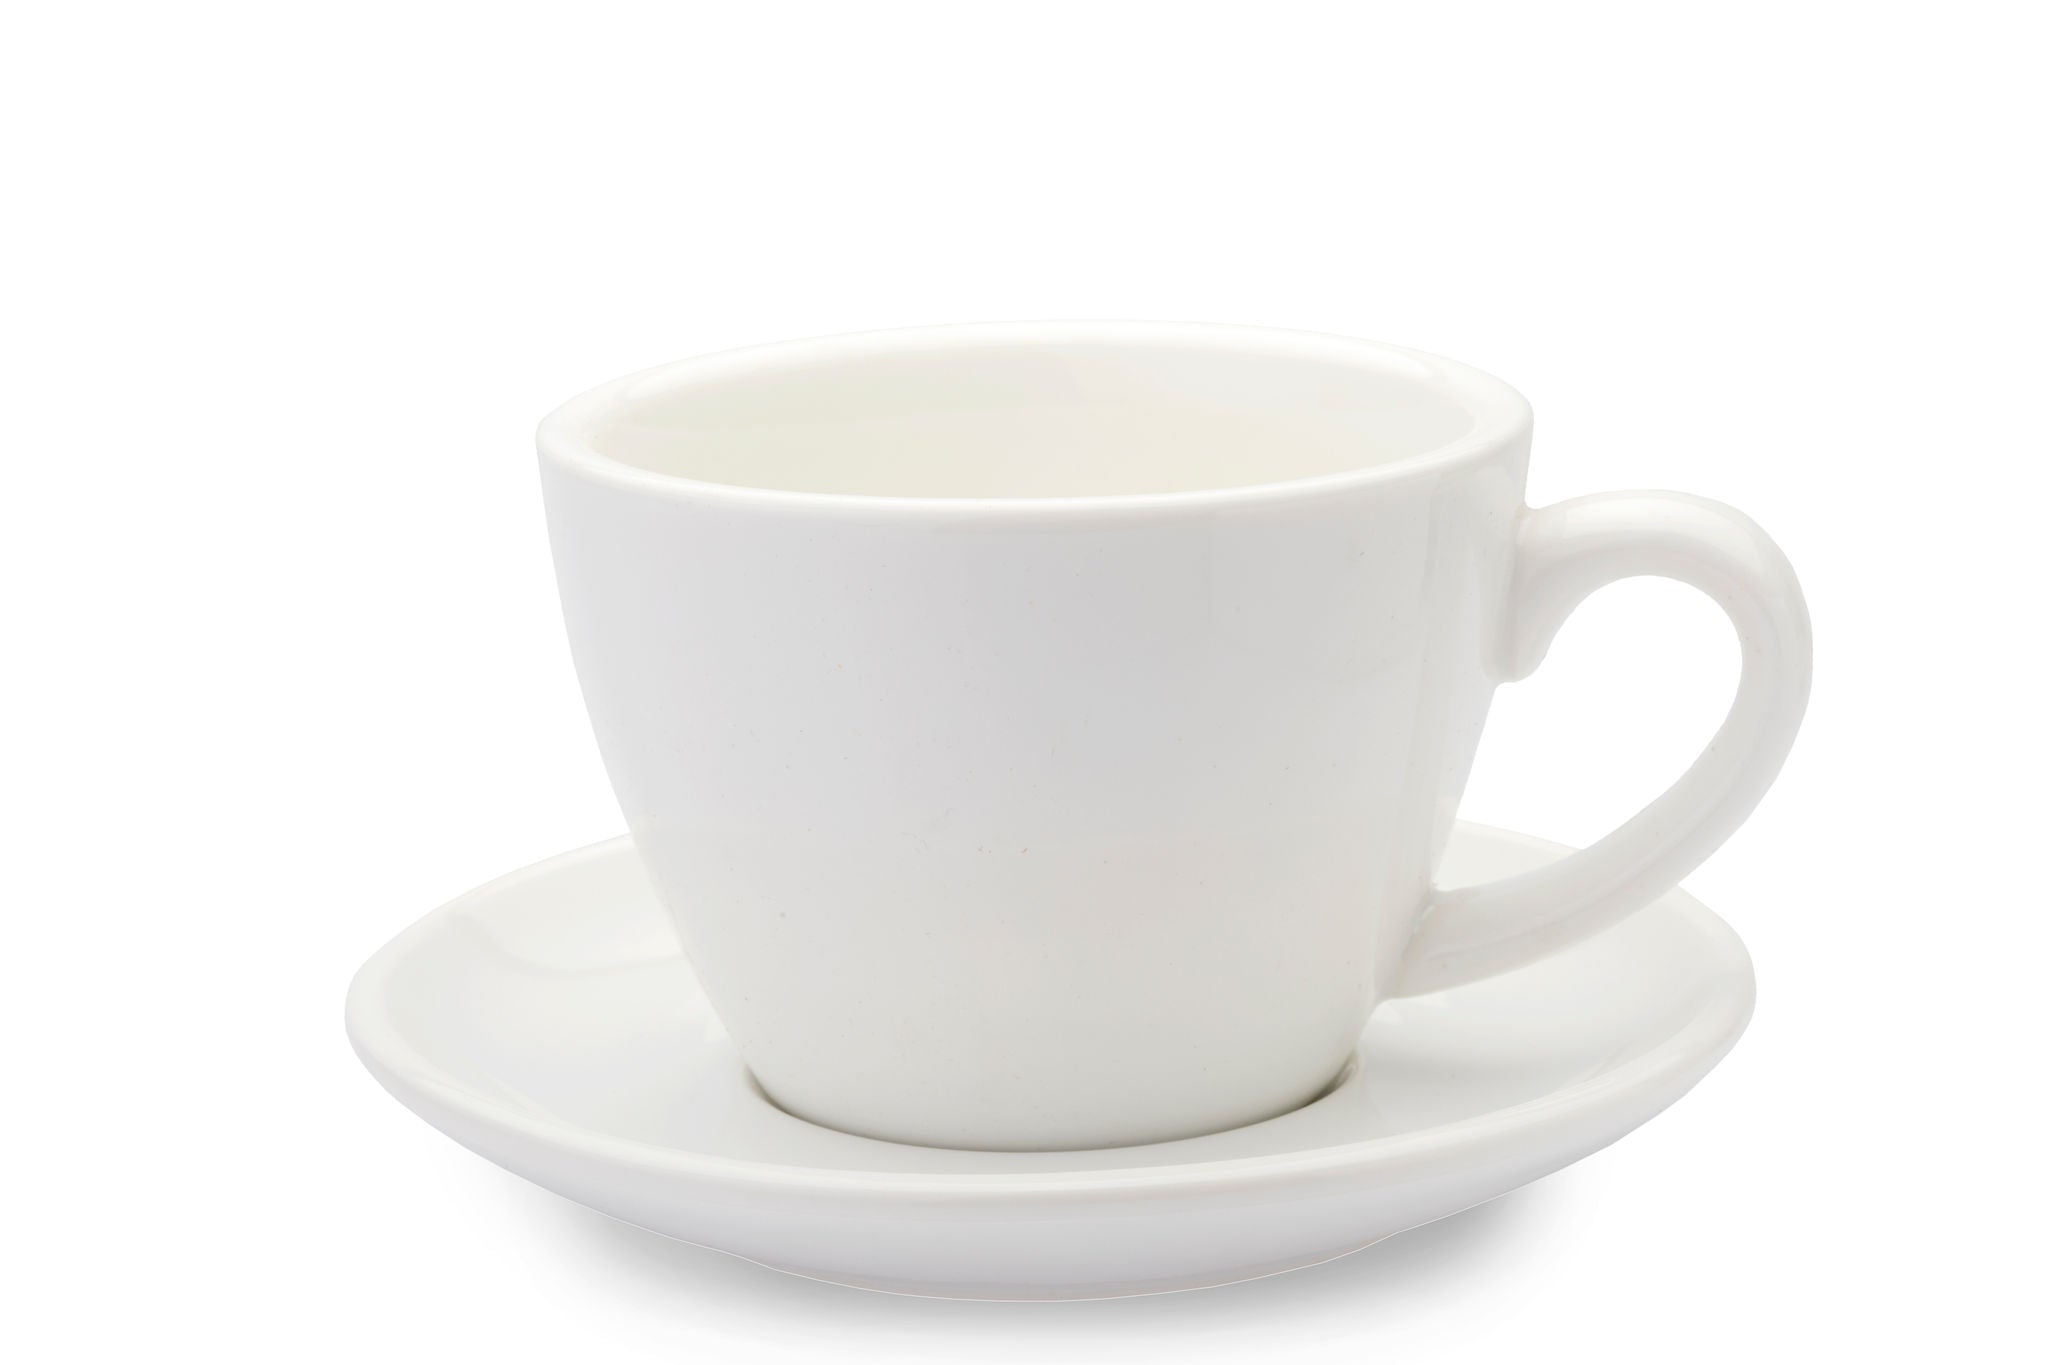 6 oz White Coffee Mug